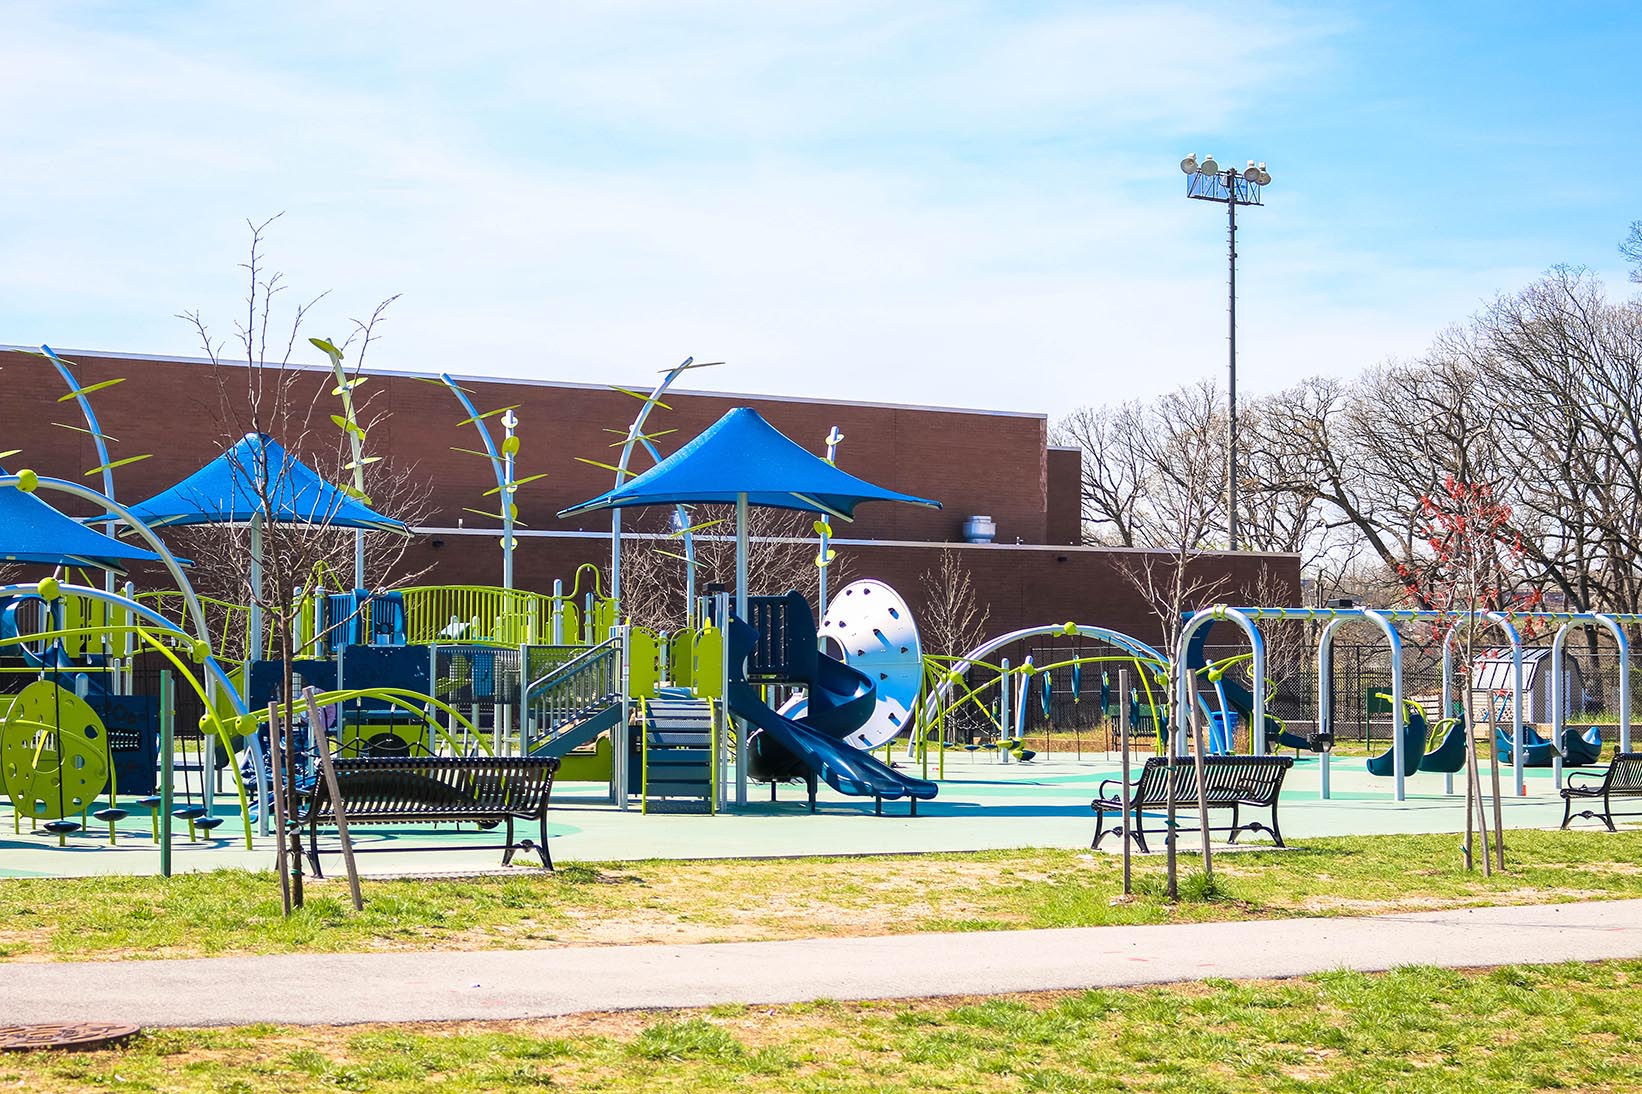 Community center playground in Hillcrest, Washington, D.C.